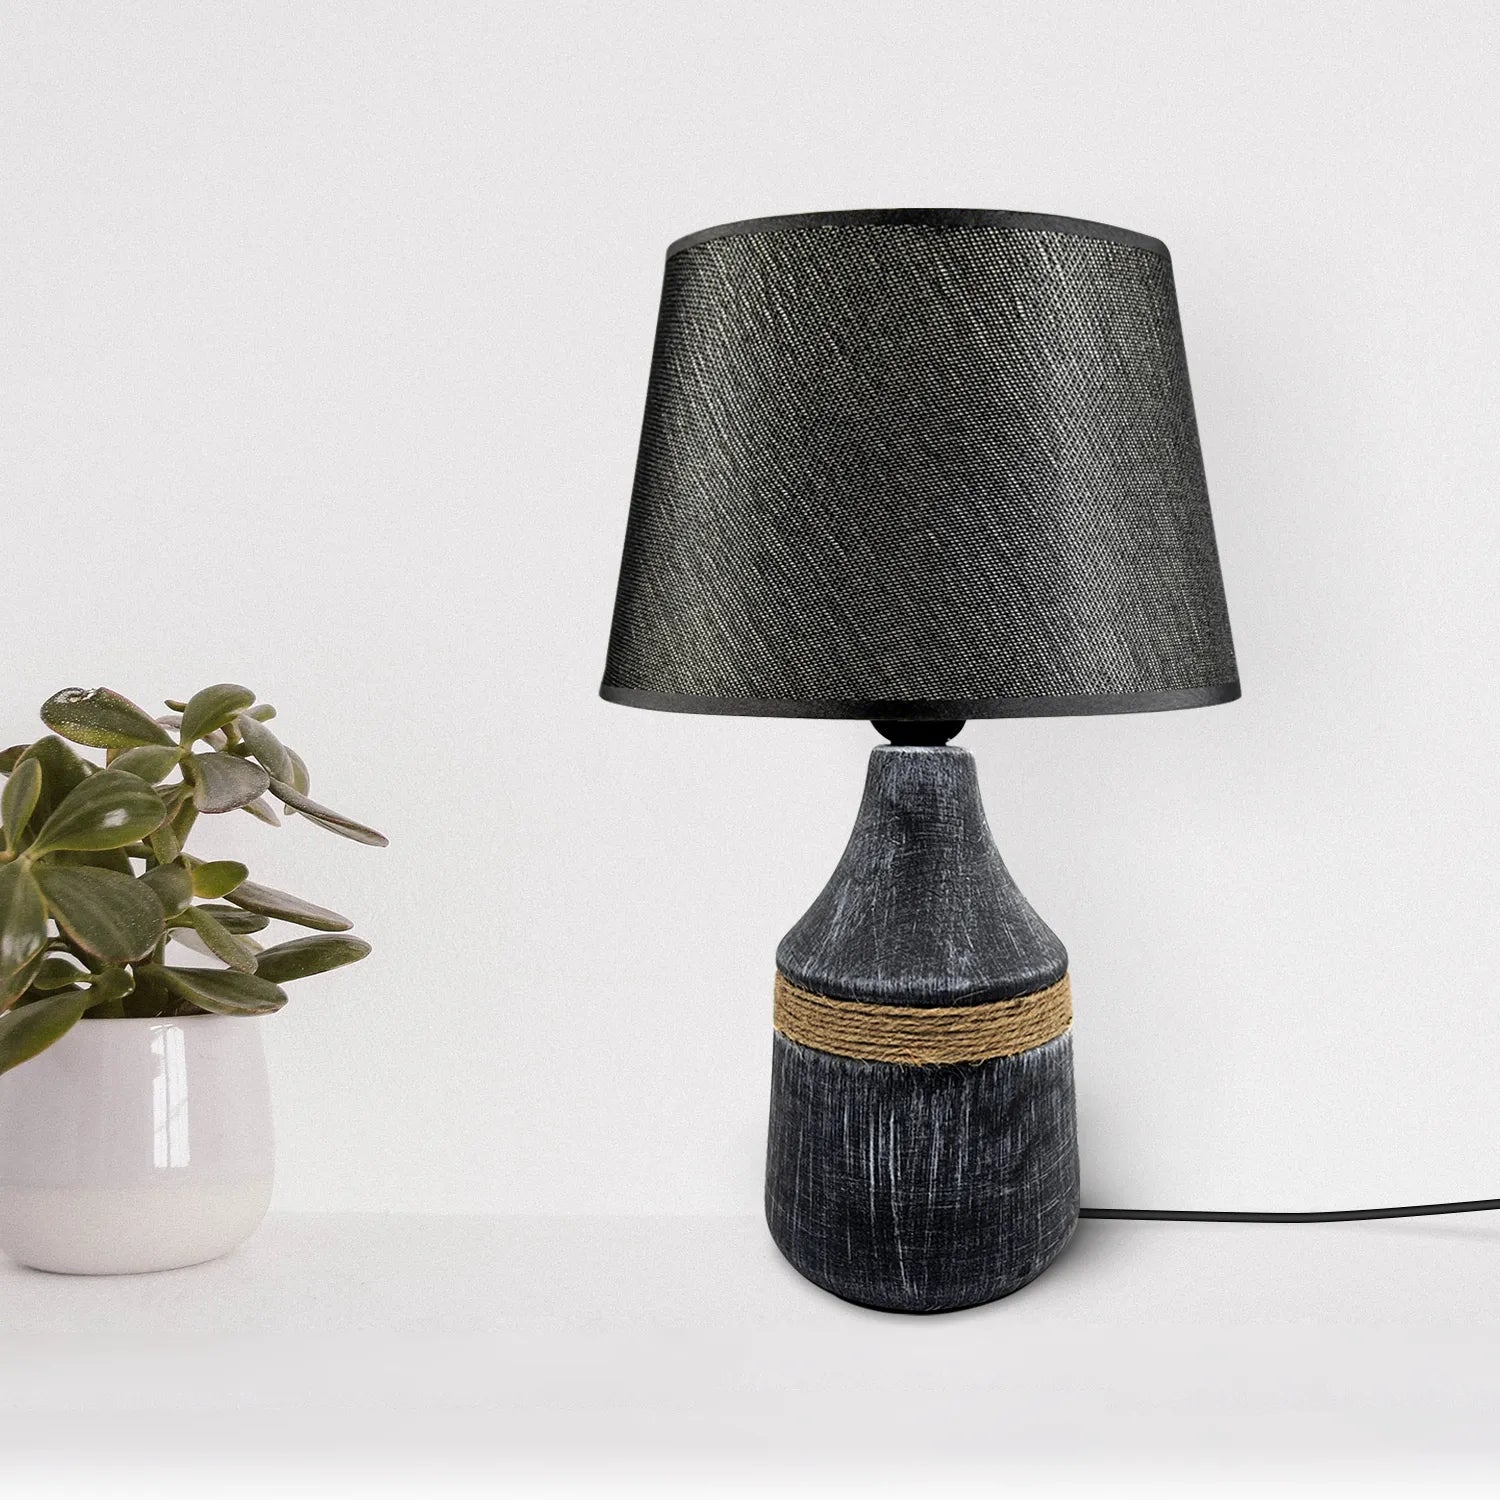 ceramic Lamp base modern lampshade plug in Table lamp